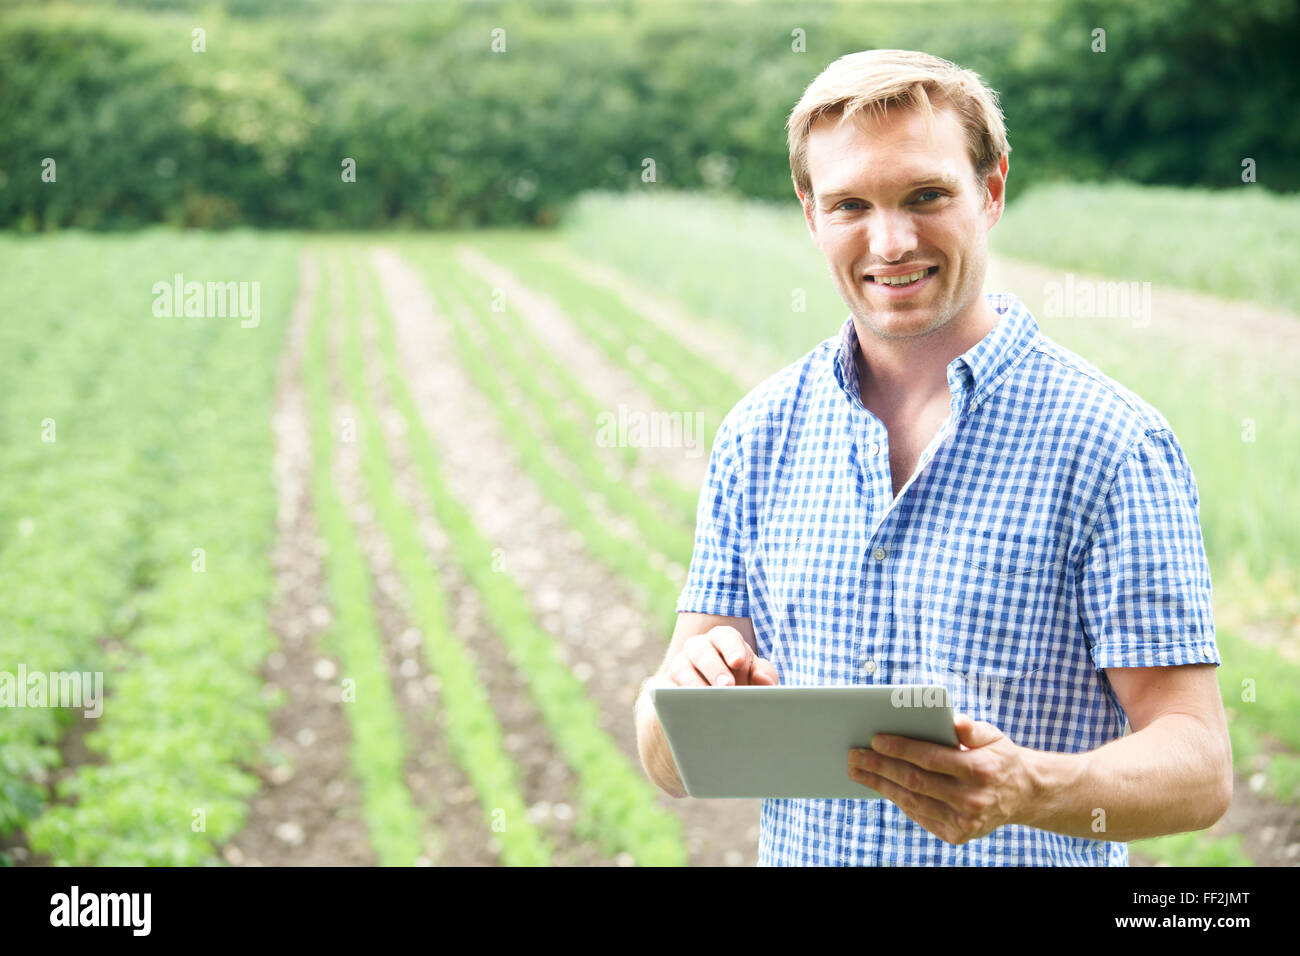 Agricoltore in azienda agricola biologica con tavoletta digitale Foto Stock